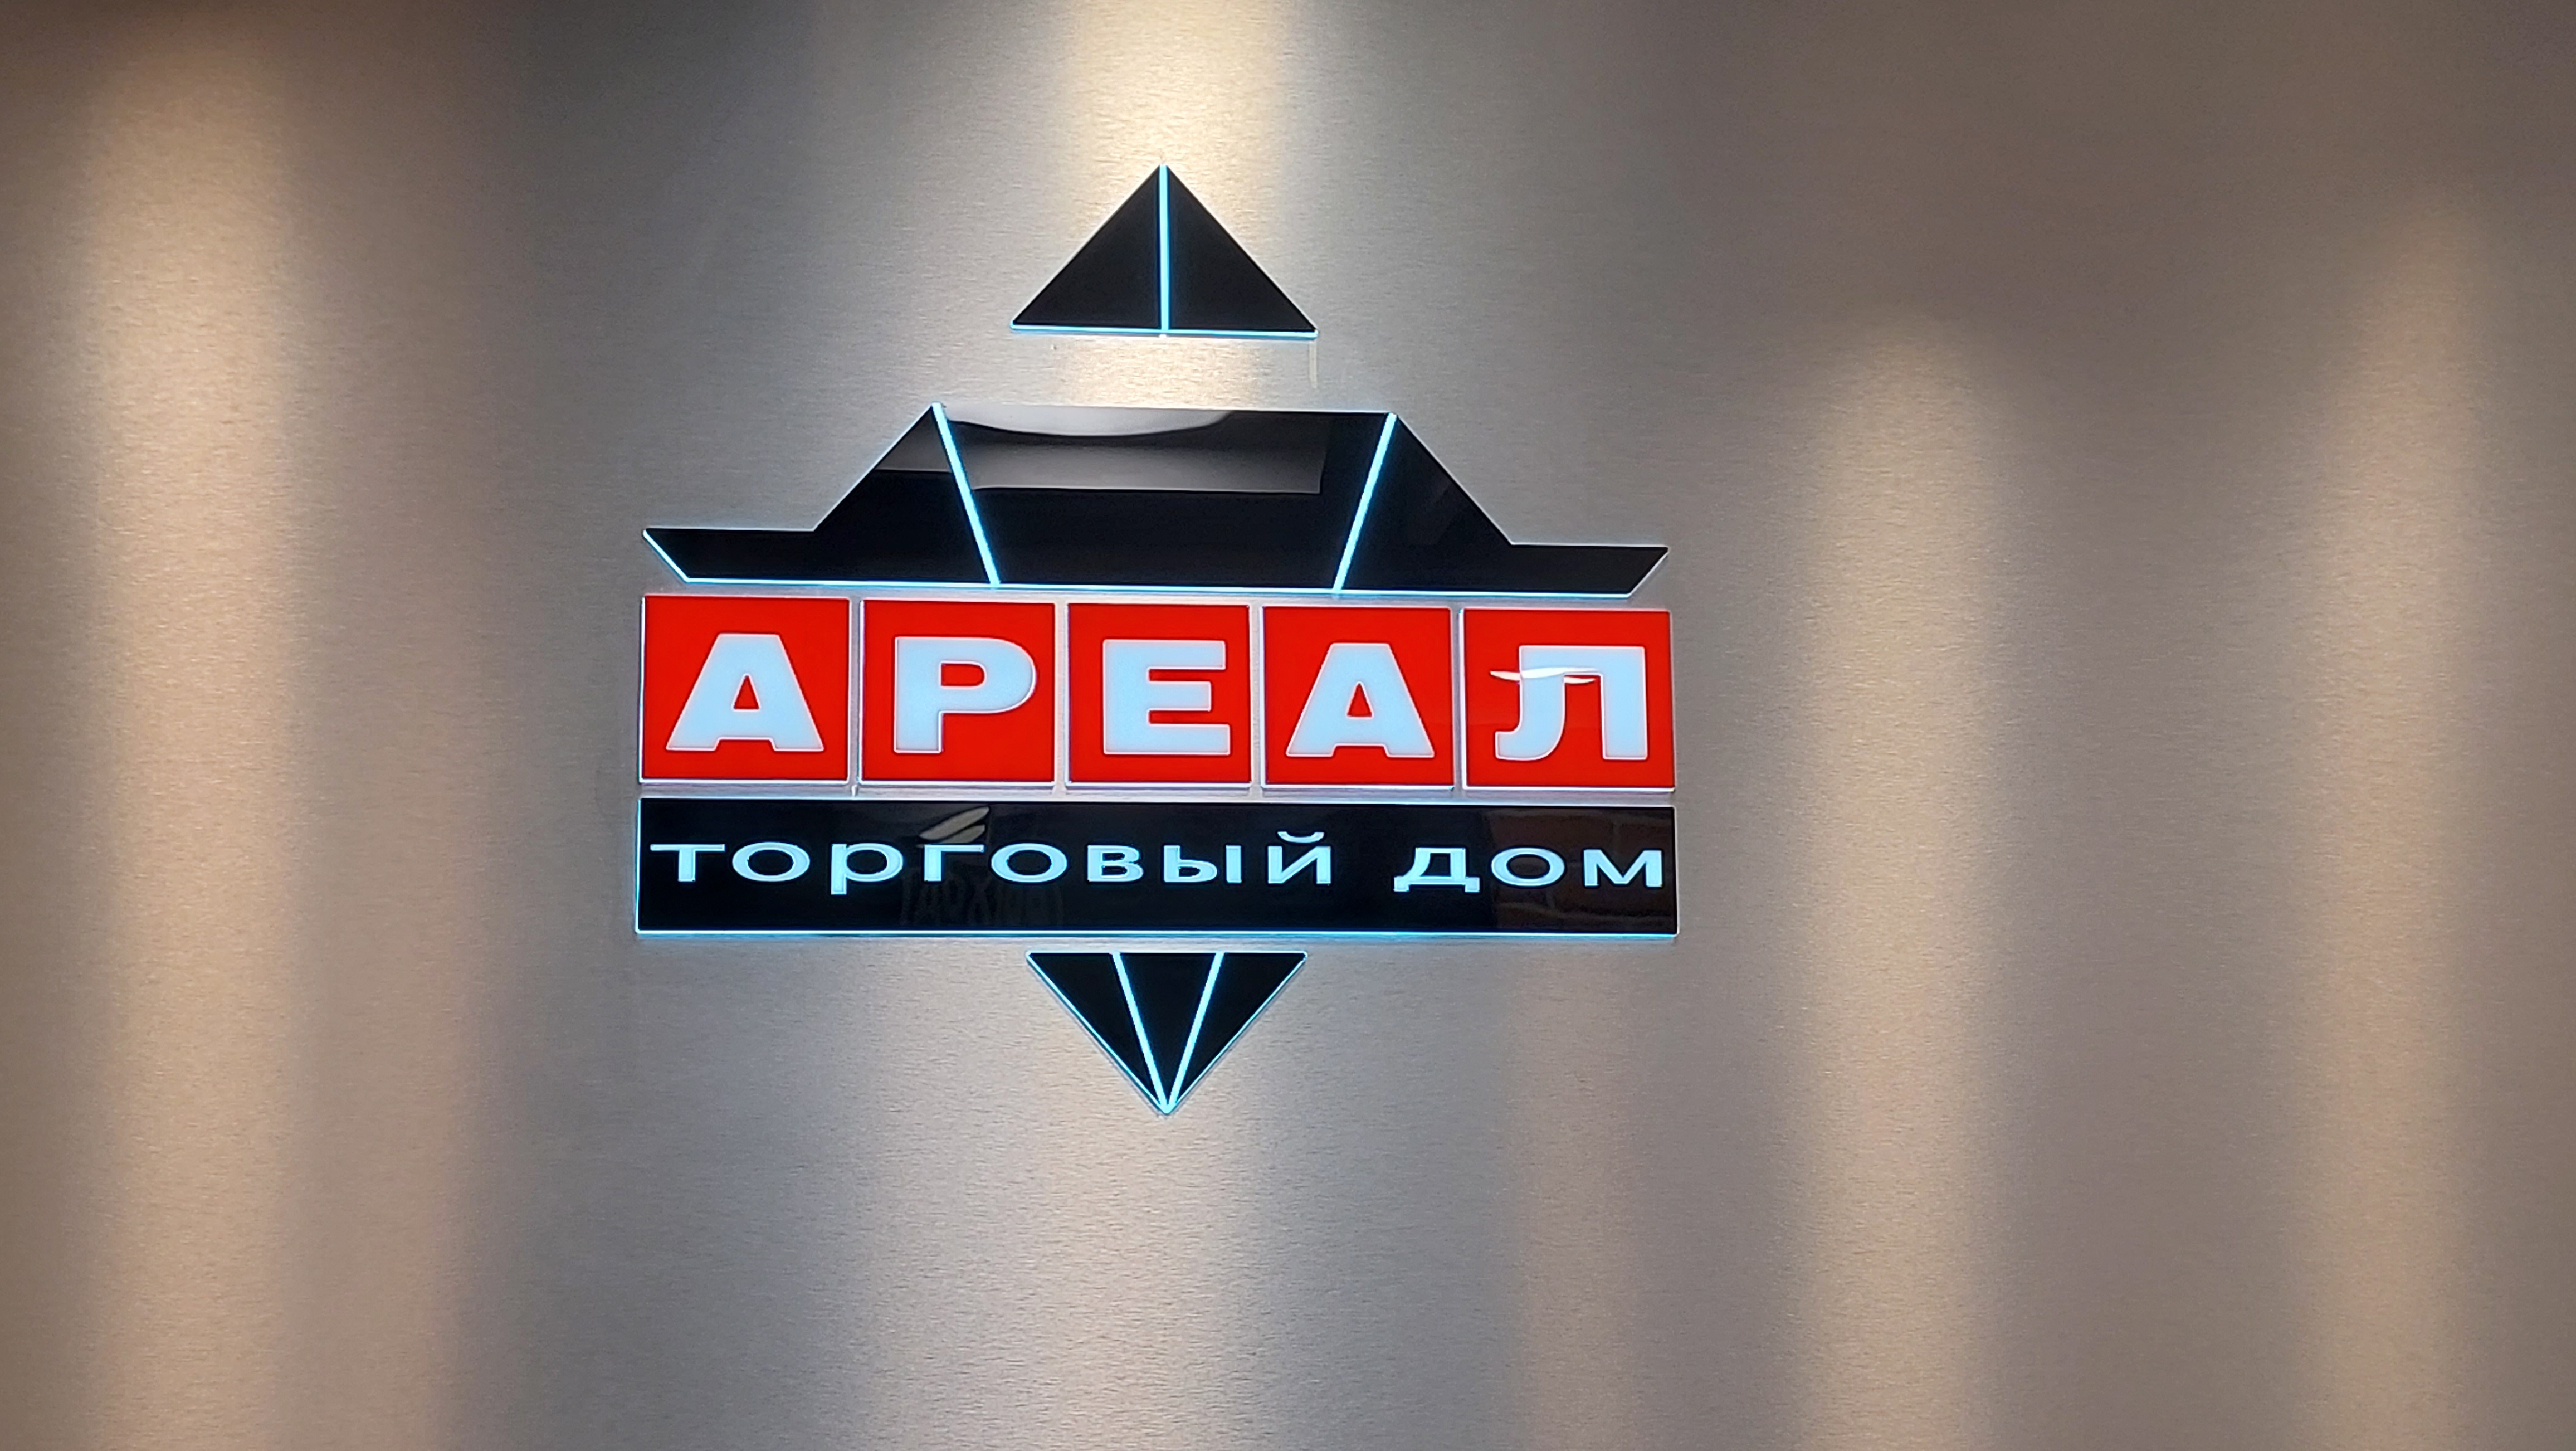 ТД "Ареал", логотип